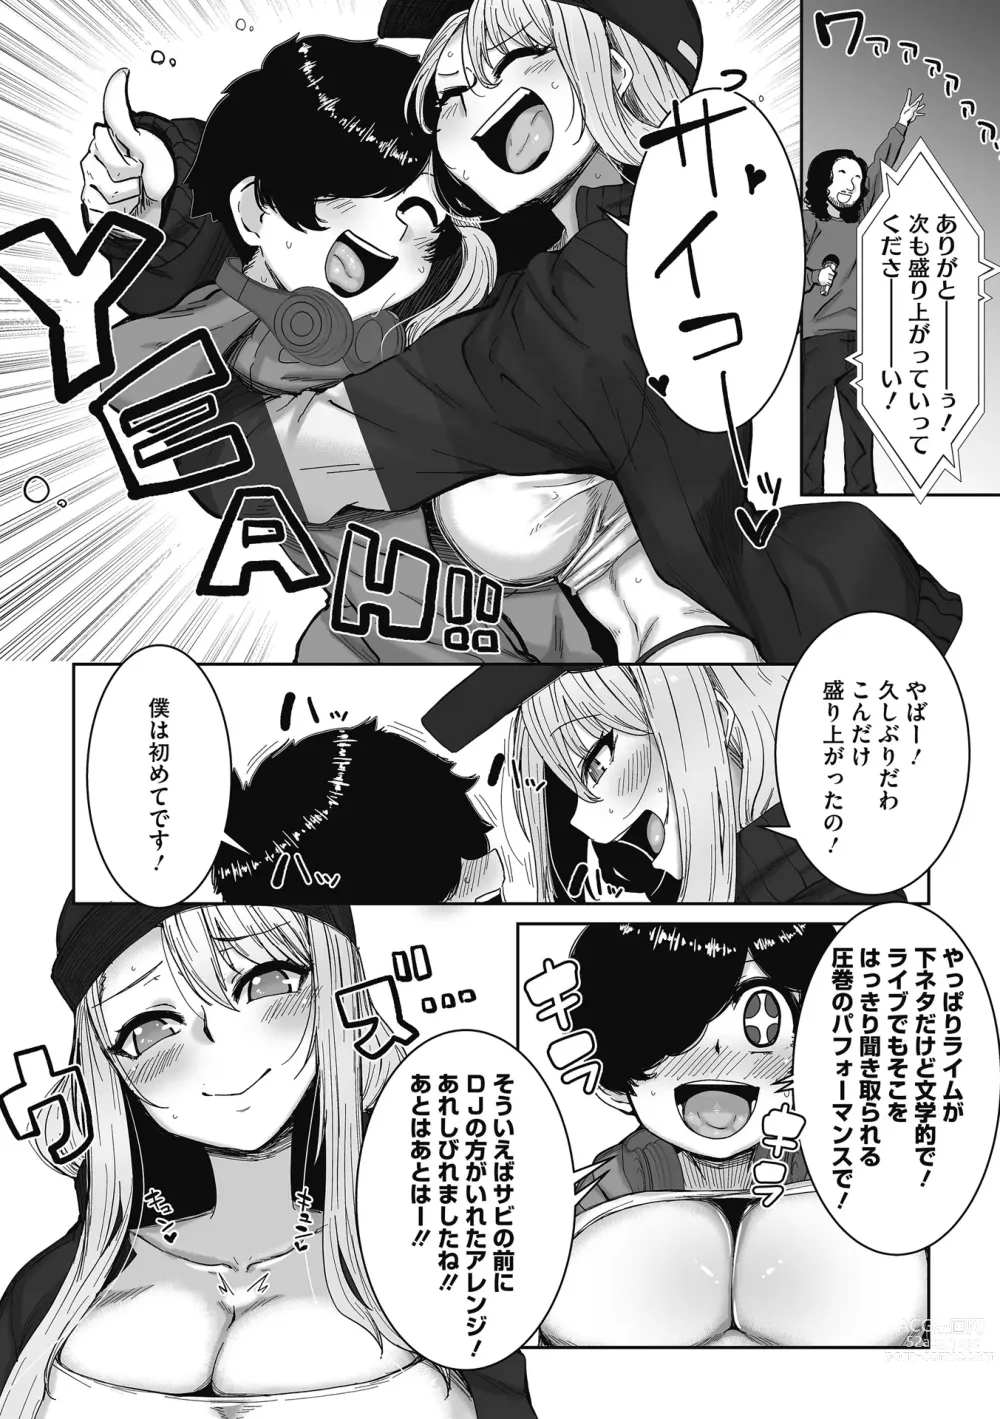 Page 7 of manga Otaku ni Yasashii Gal wa iru!